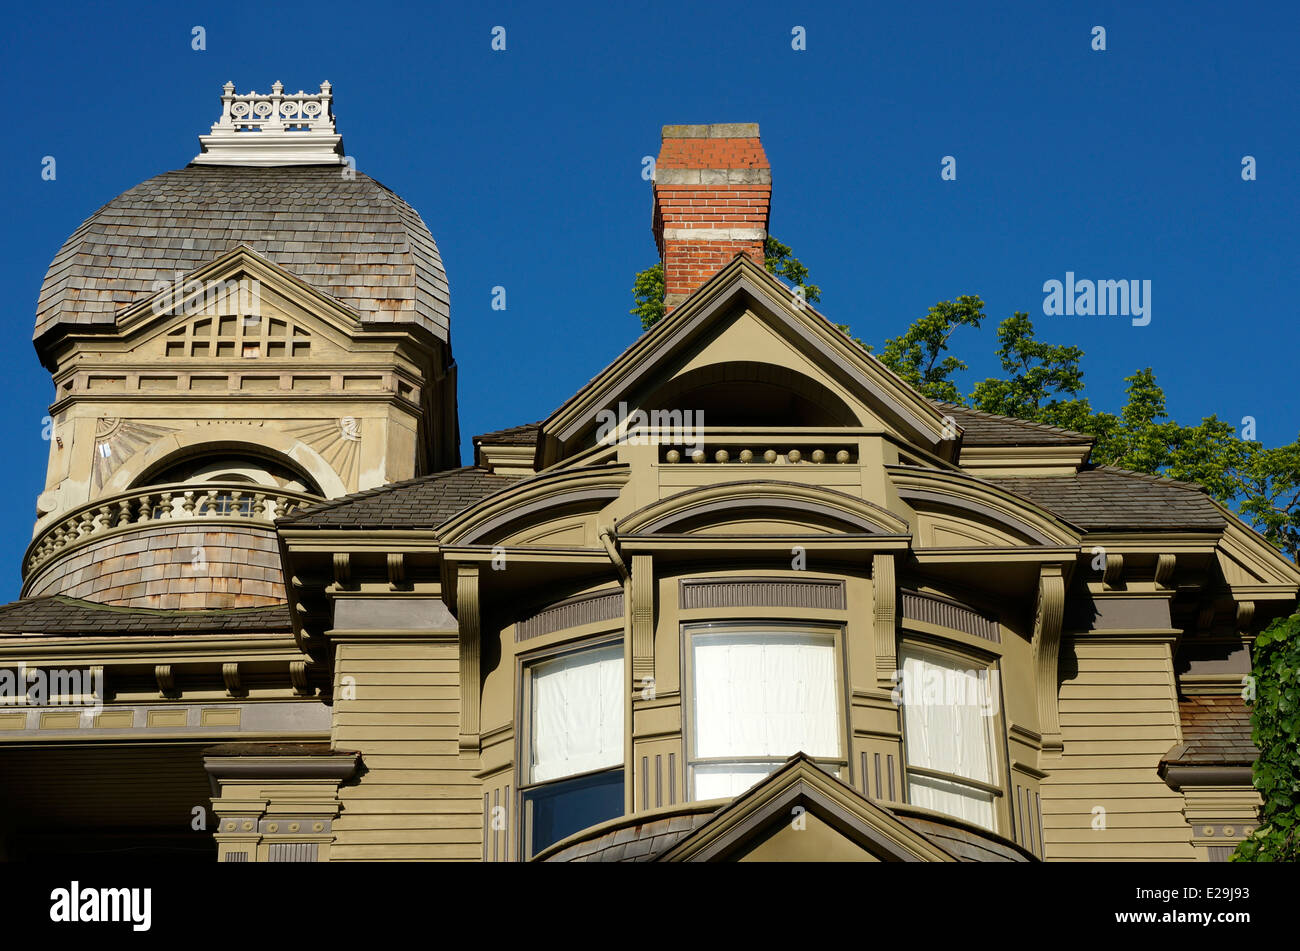 Le style Queen Anne Gamwell Victorian Mansion dans le quartier historique de Fairhaven Bellingham, Washington State, USA Banque D'Images